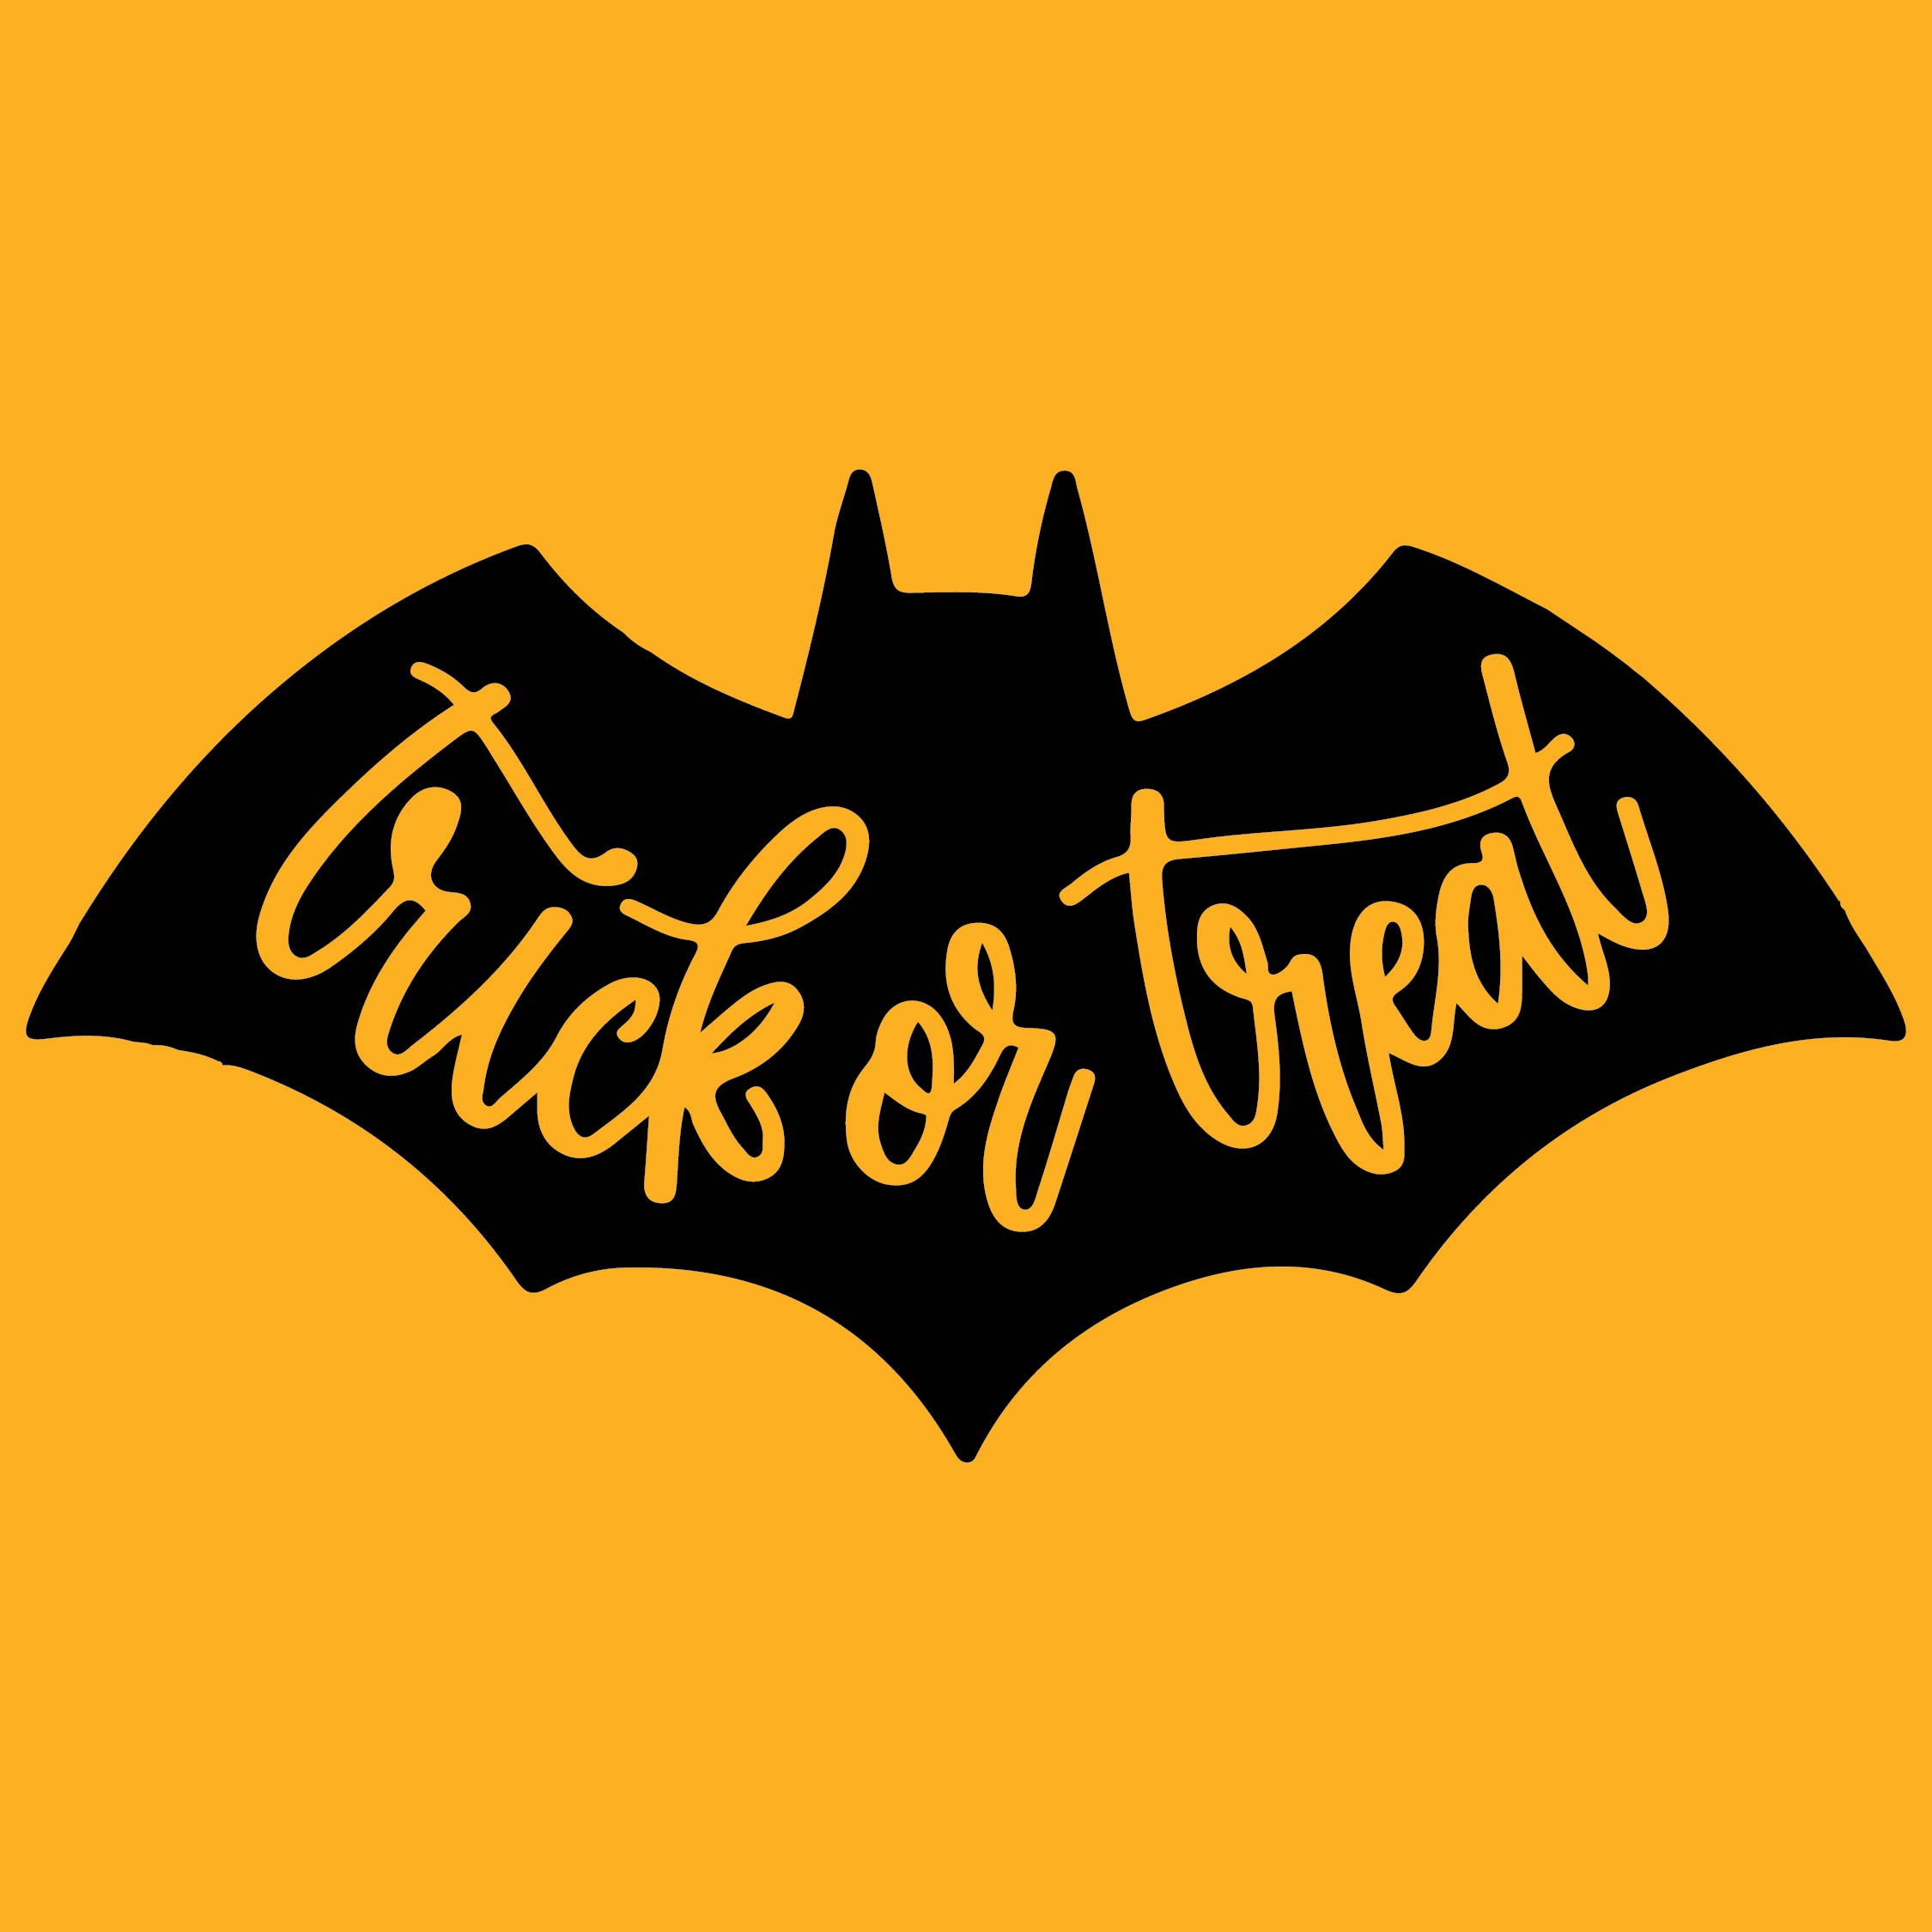 15 Best Free Printable Halloween Signs To Print Printablee